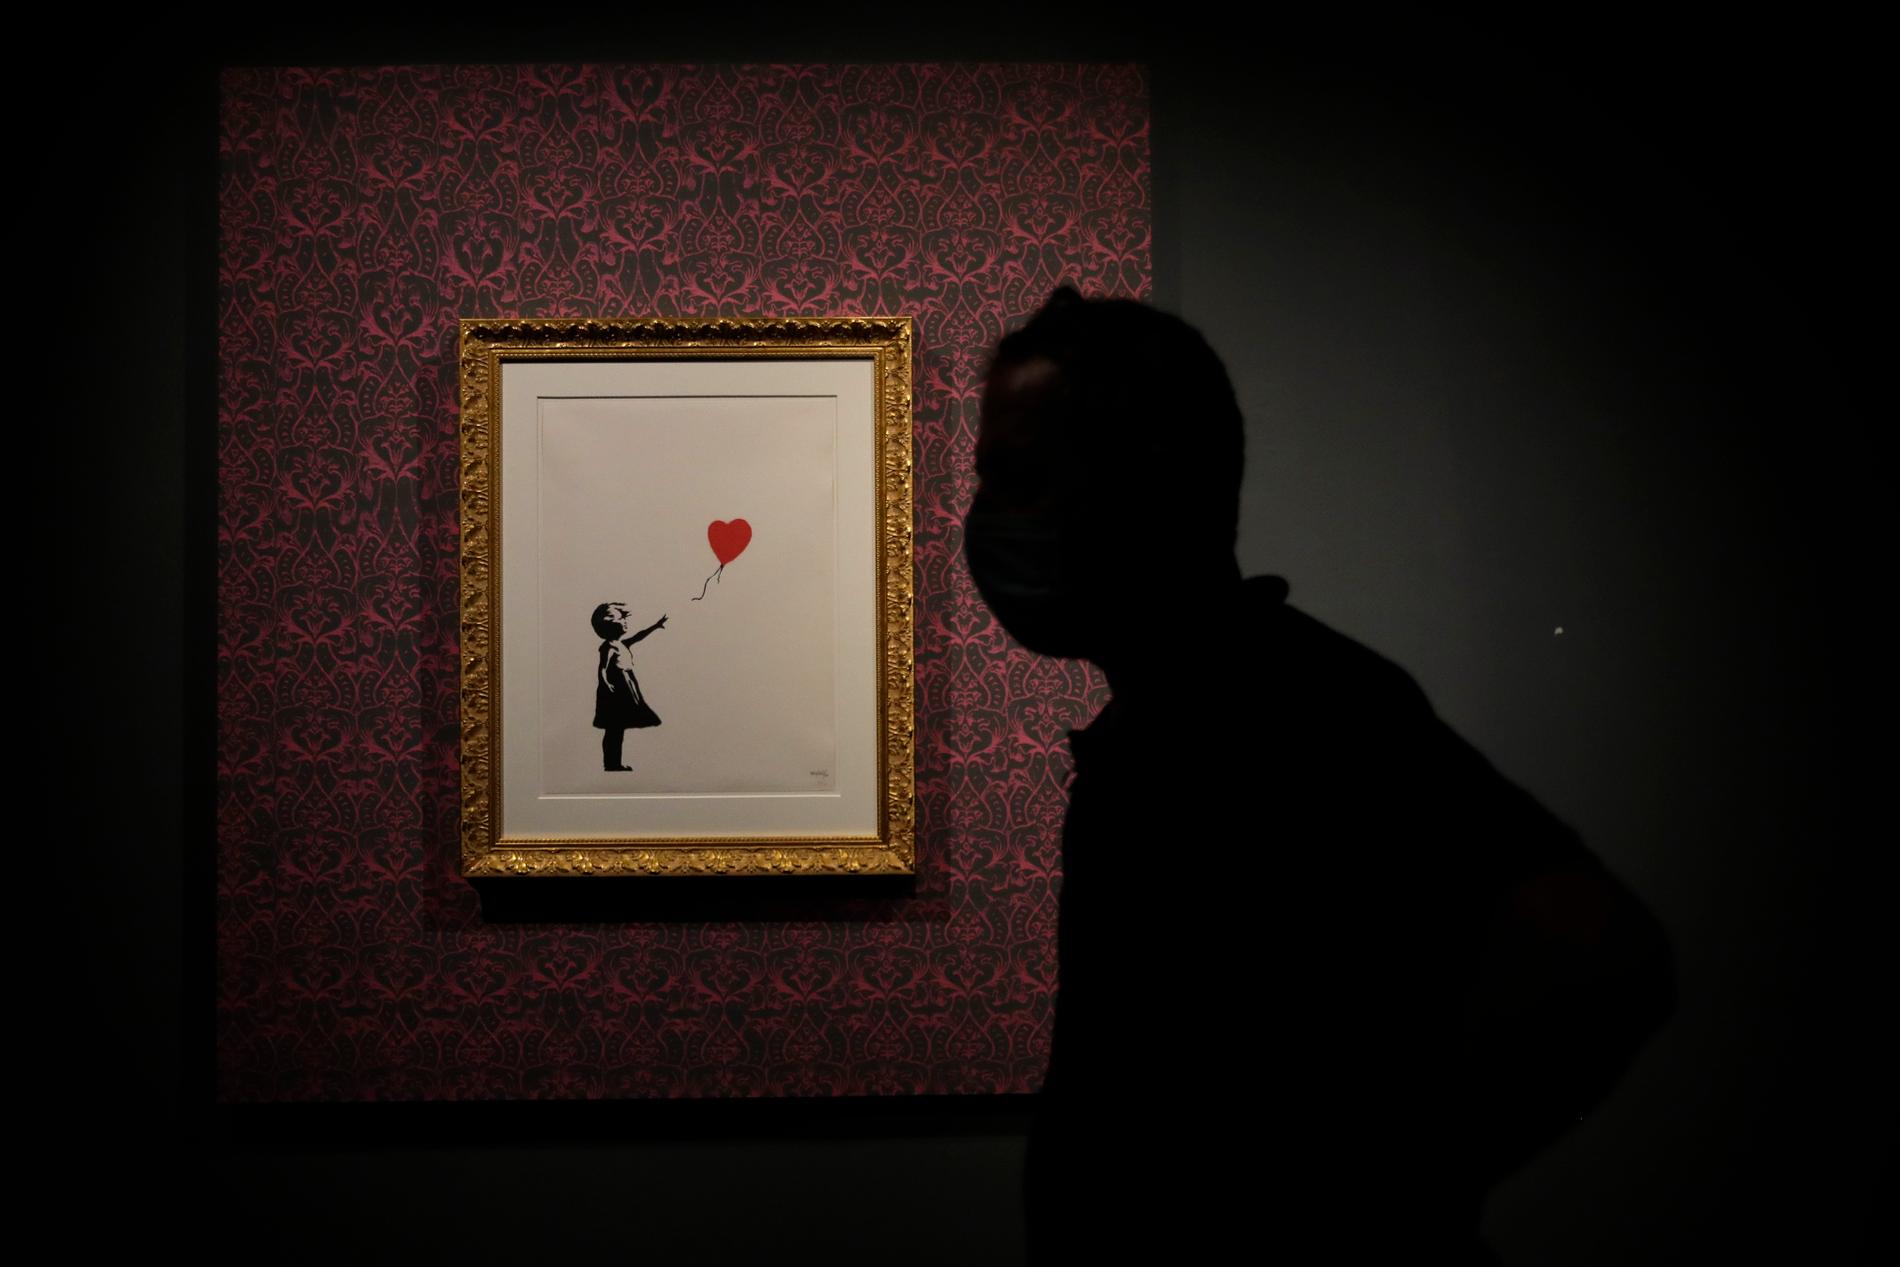 Manlig siluett framför en print av Banksys kända verk ”Girl with balloon”.